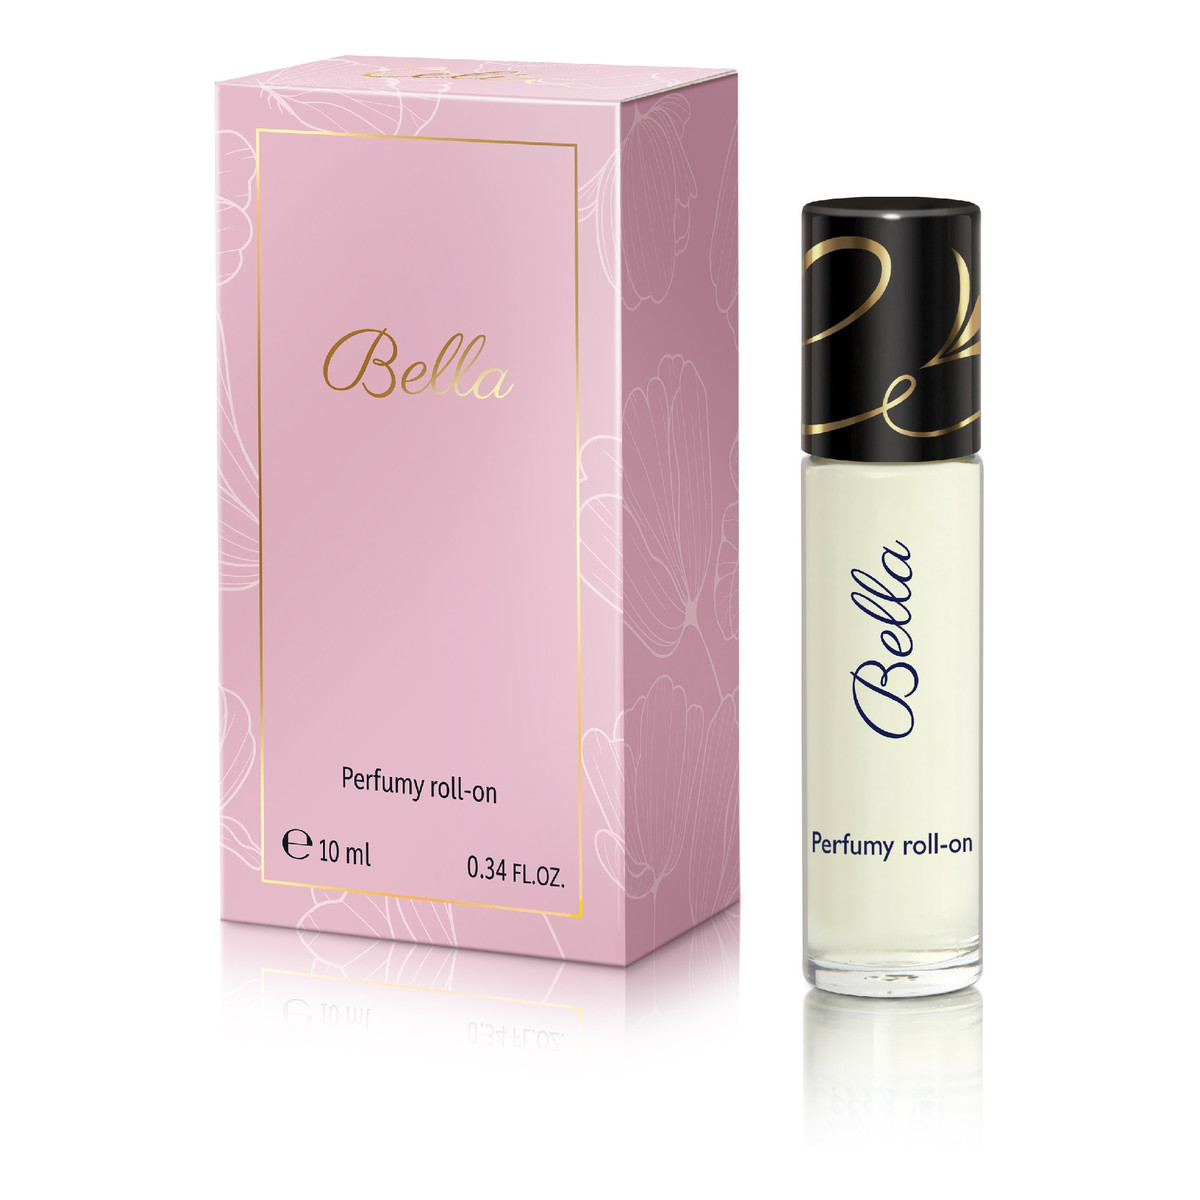 Celia Marvell BELLA perfumy roll-on 10ml